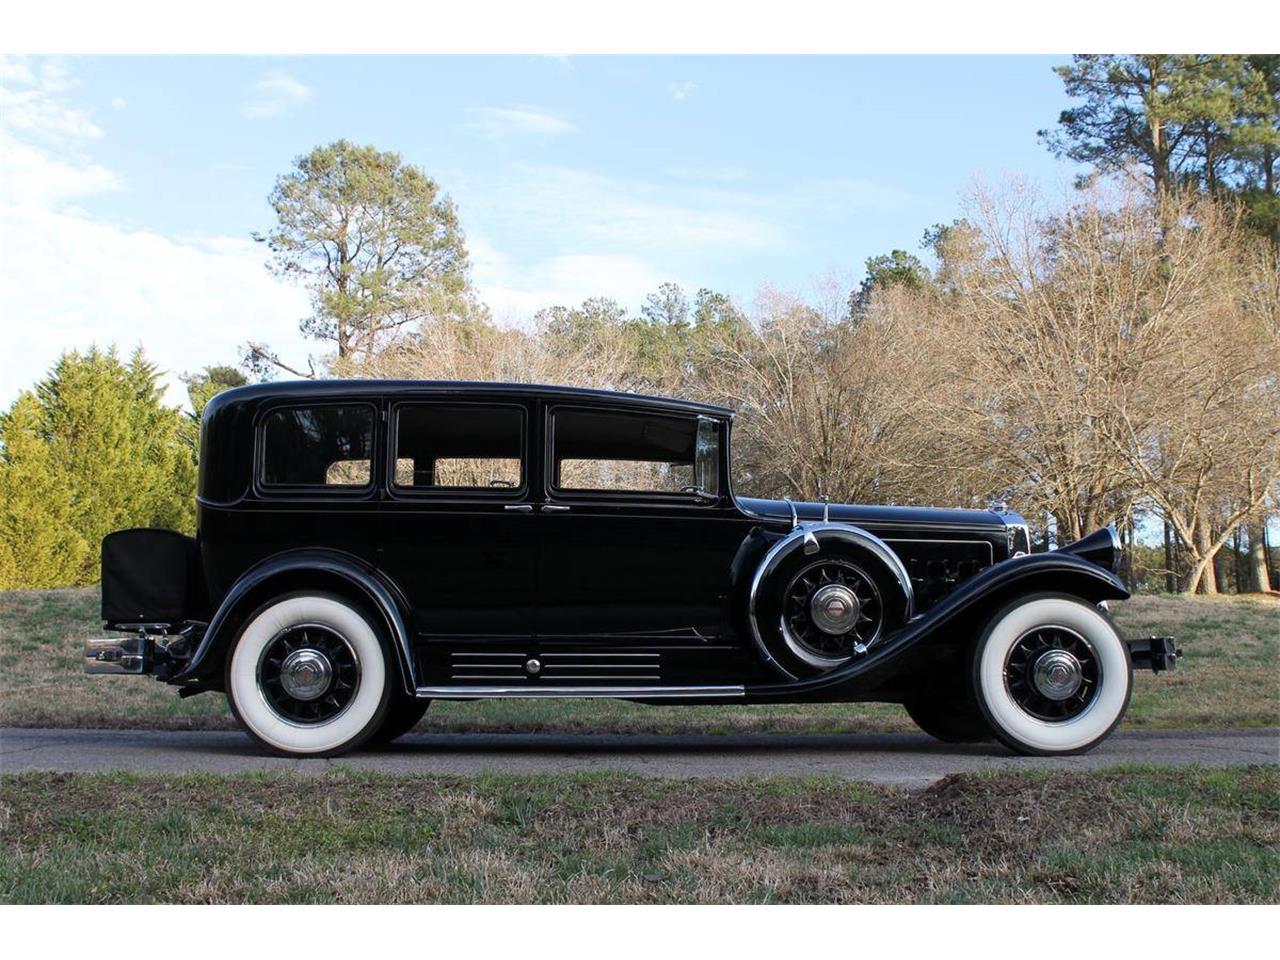 1930 Pierce-Arrow 4S Limousine for Sale | ClassicCars.com | CC-997010